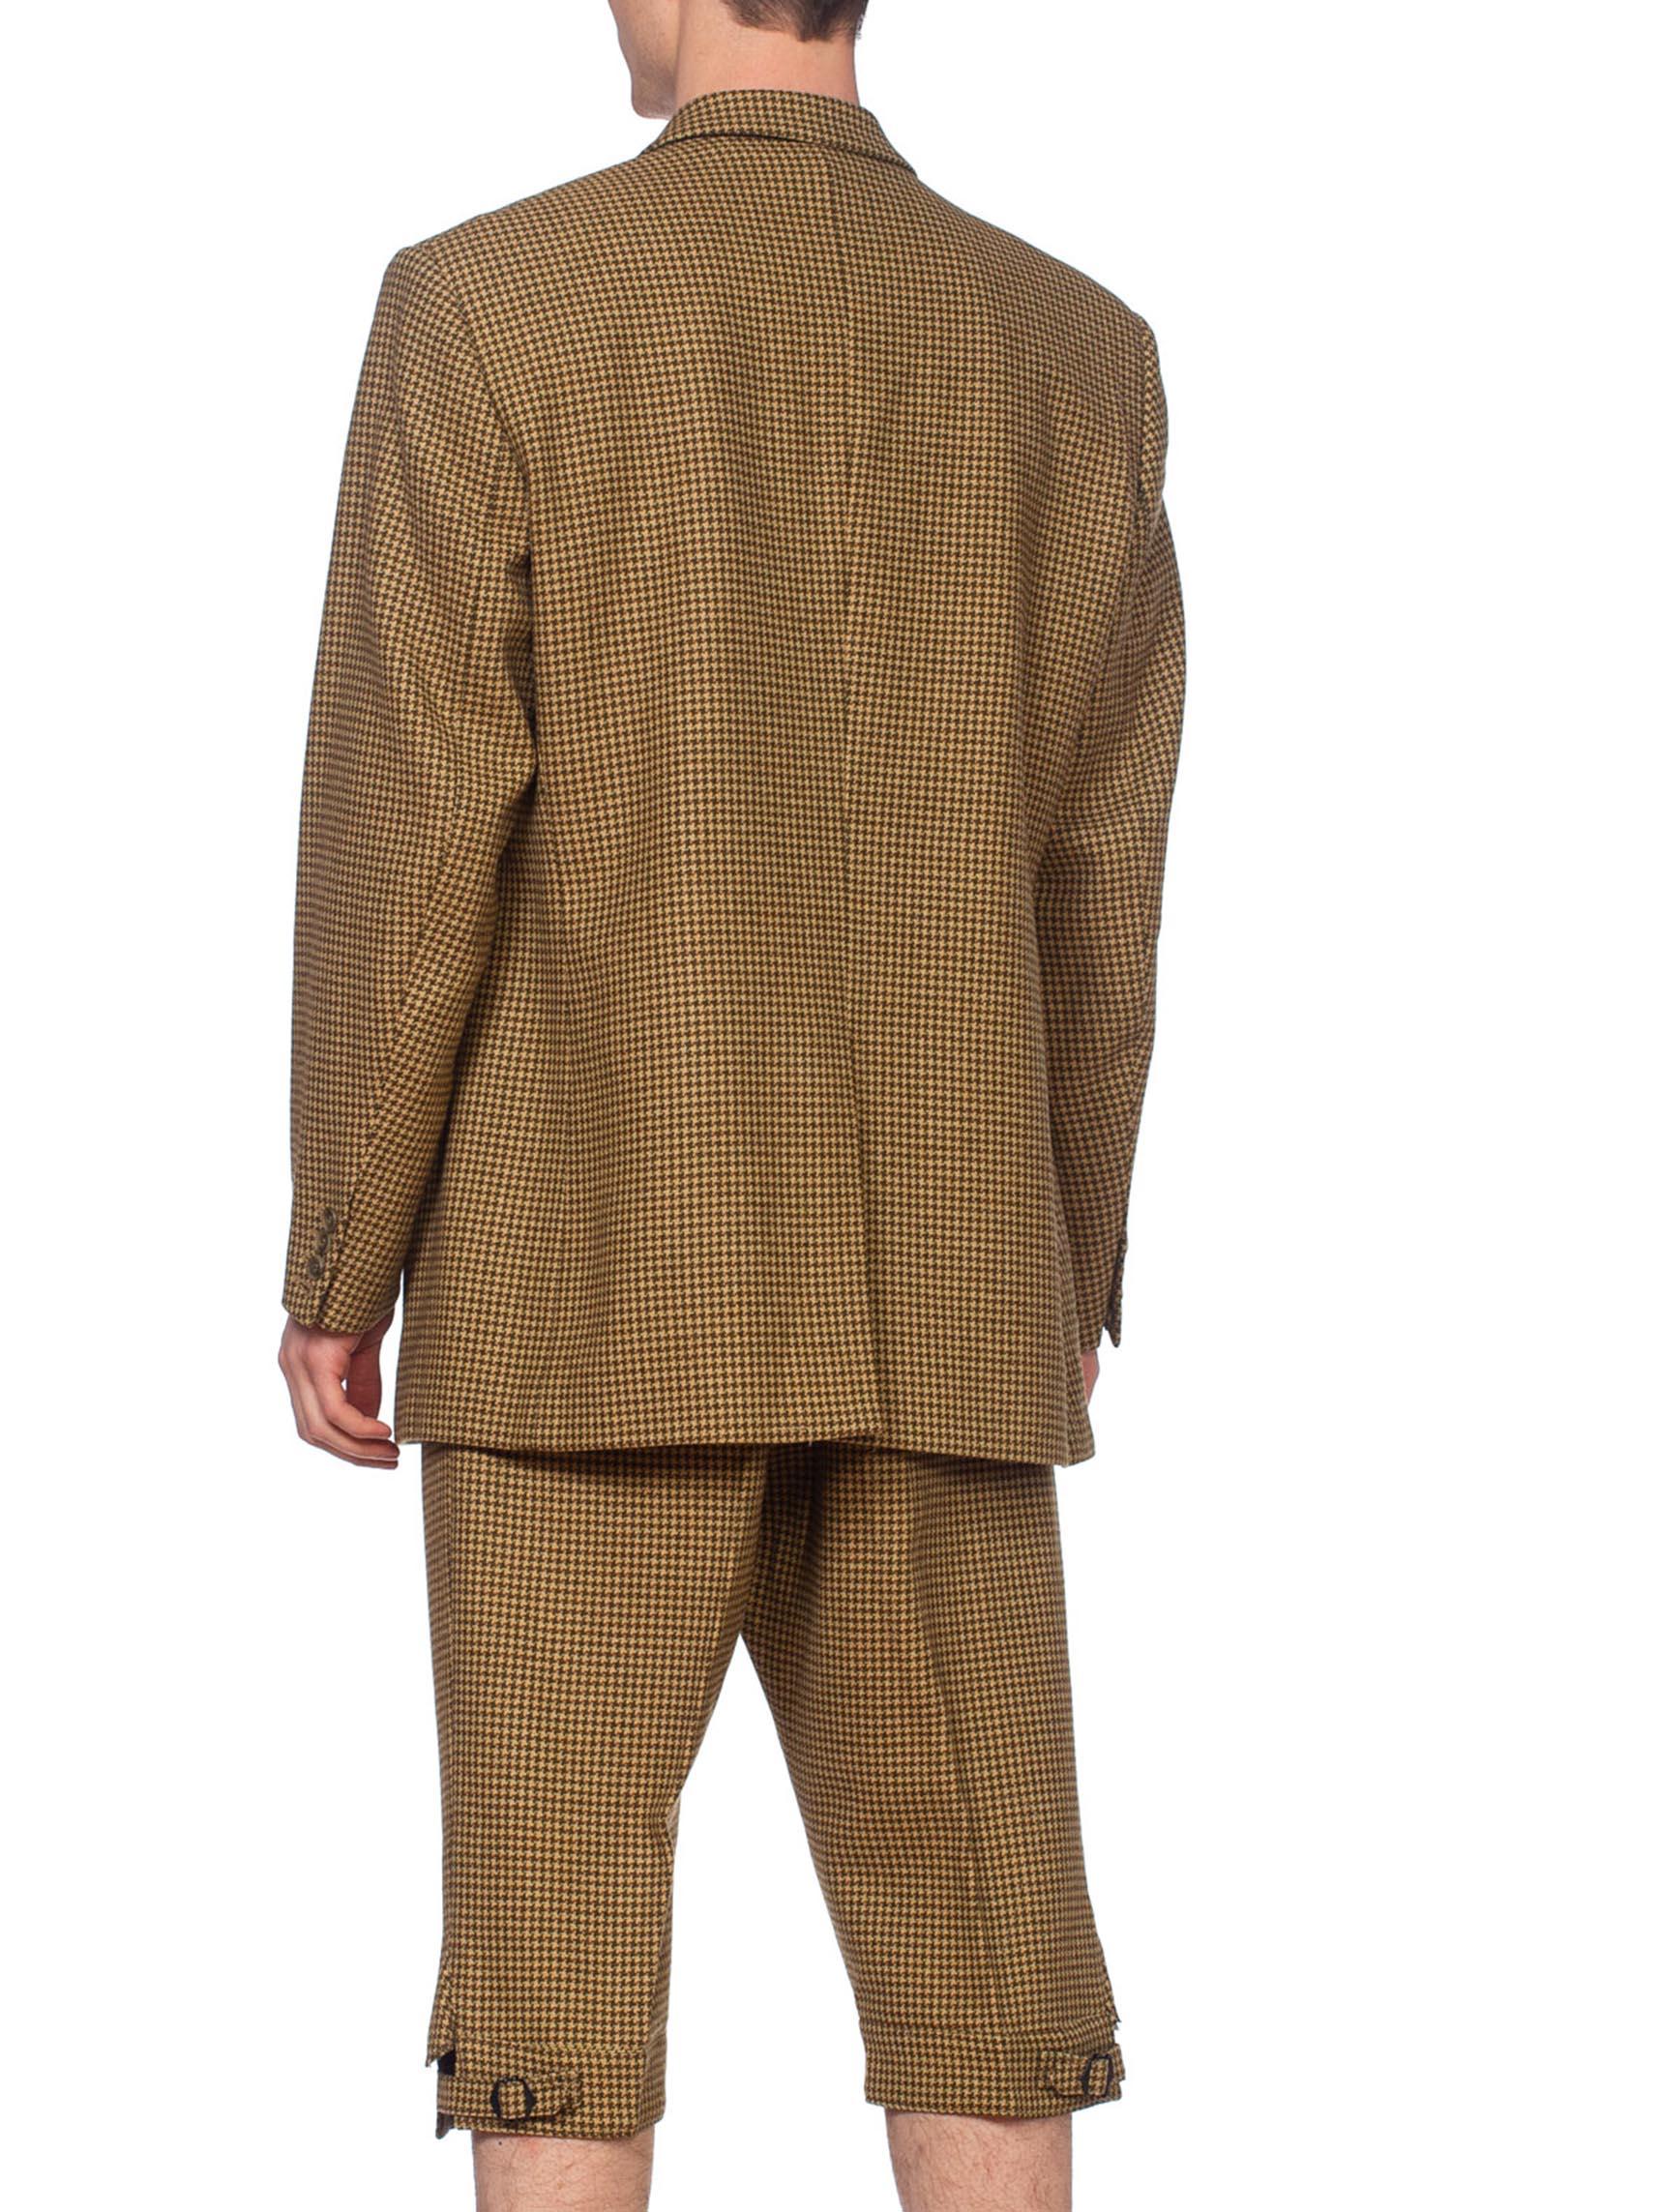 cordings tweed suit